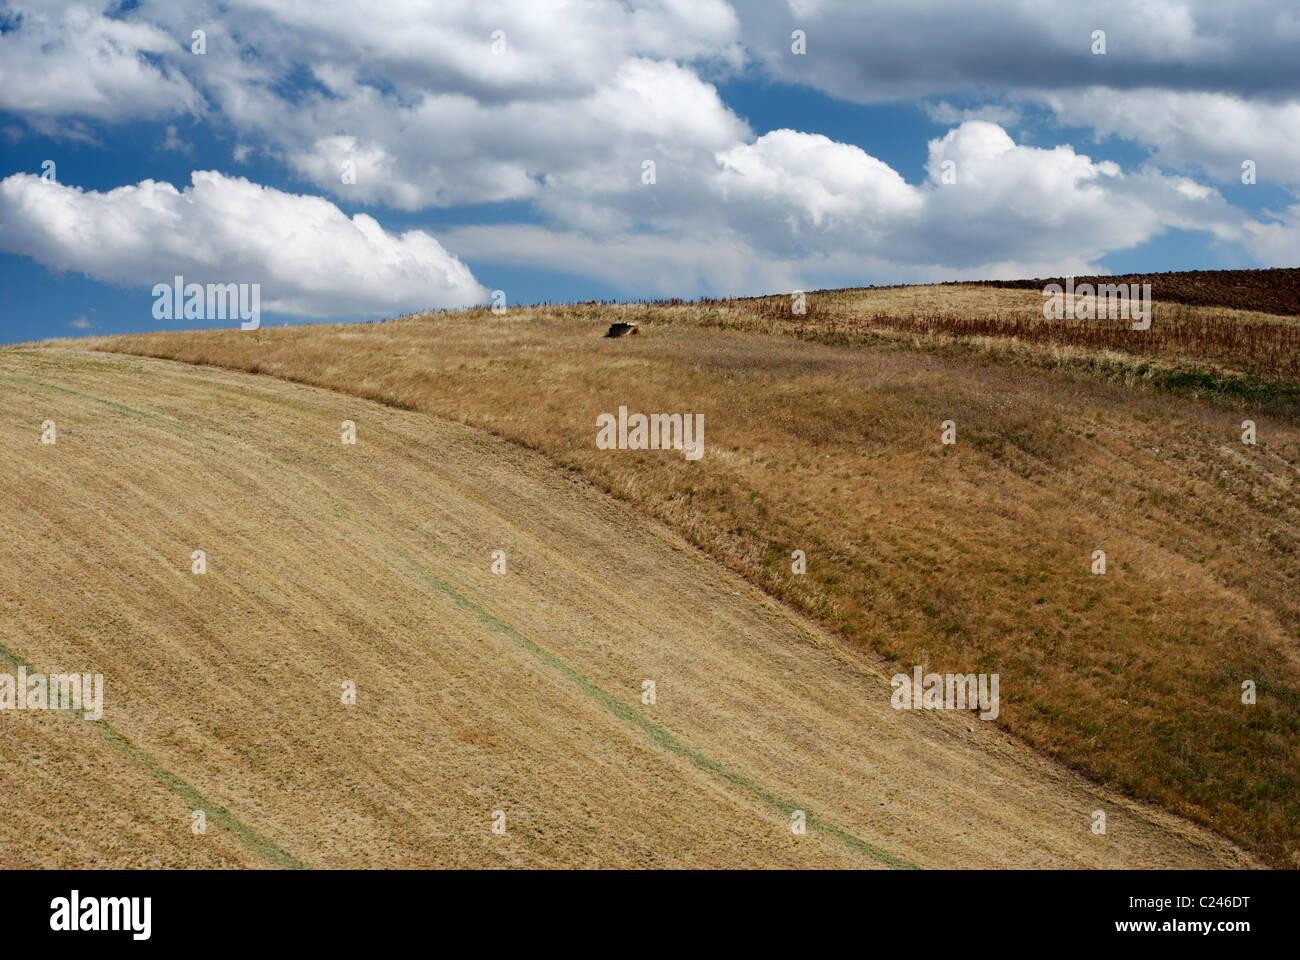 Arid hills in summertime Stock Photo